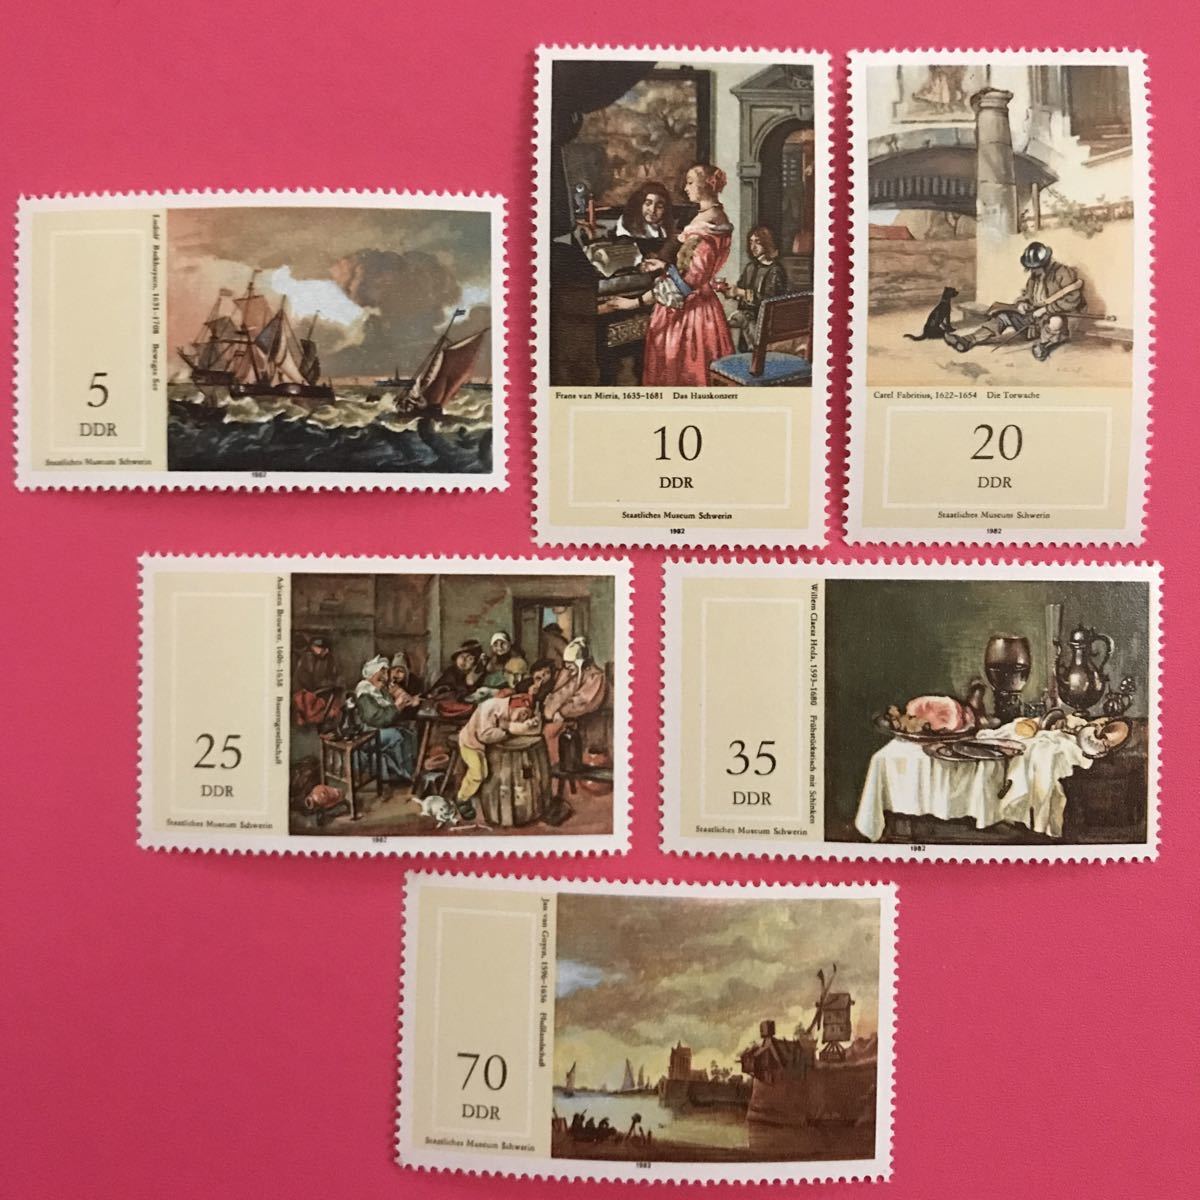 Sellos extranjeros sin usar★Alemania Oriental 1982 Pinturas/Museo Estatal de Schwerin 6 tipos, antiguo, recopilación, estampilla, tarjeta postal, Europa